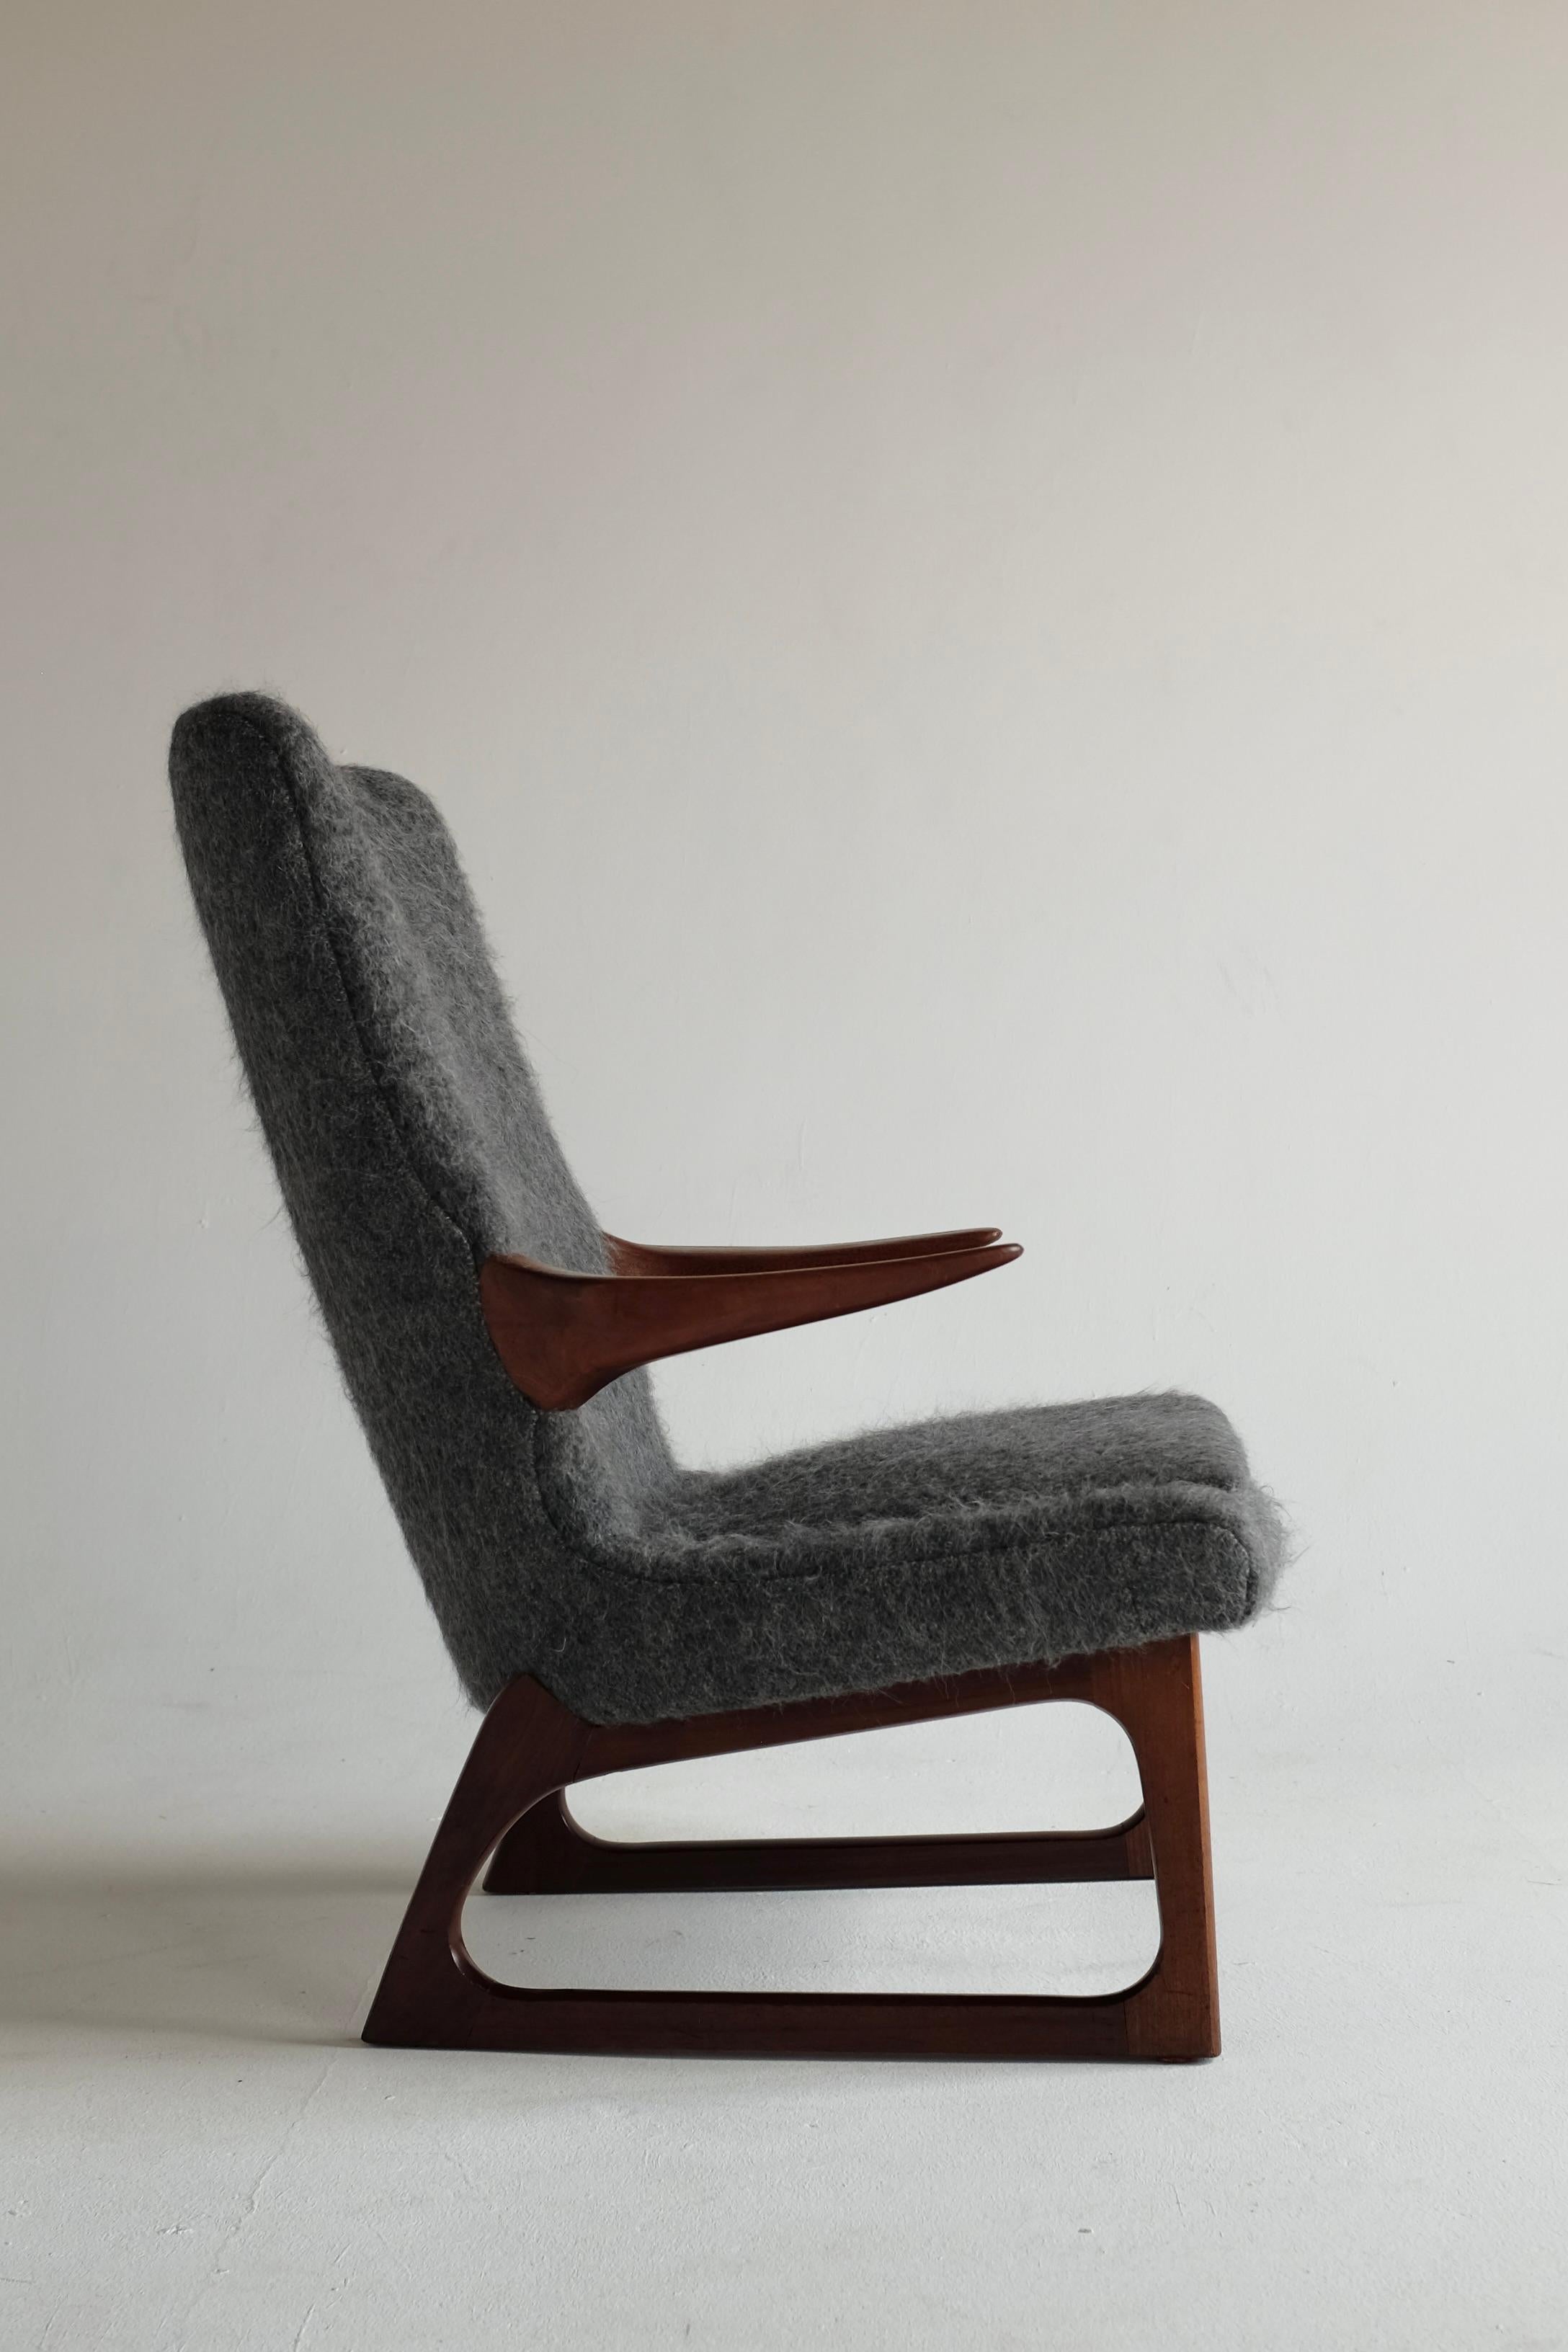 Atemberaubender Mid-Century-Sessel aus den 1960er Jahren von Fredrik A. Kayser für Vatne, Norwegen. Der Stuhl hat schöne geschnitzte Teakholz-Armlehnen und -Beine, die an den skandinavischen Mid-Century-Stil dieser Zeit erinnern. Fredrik A. Kayser